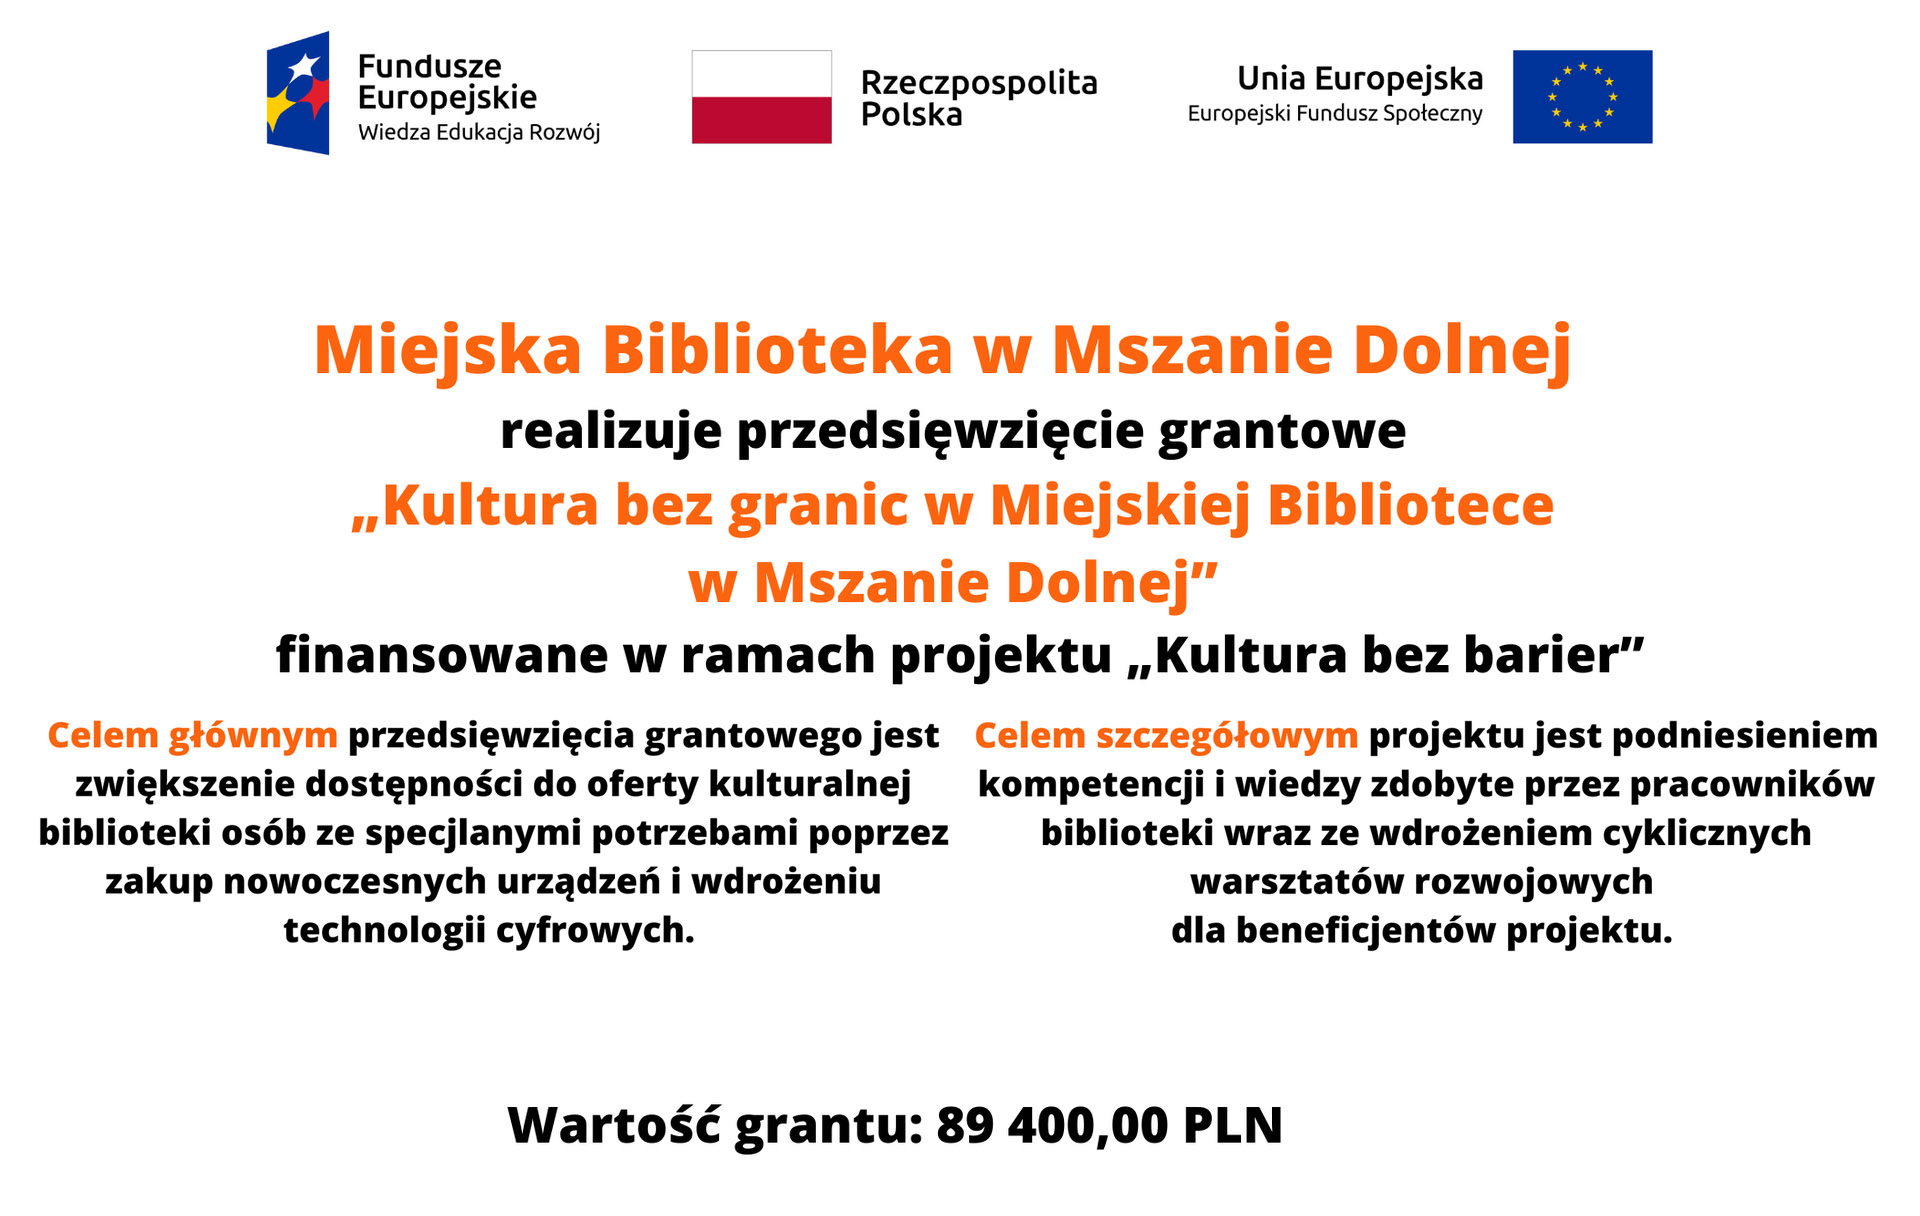 Baner informacyjny o programie "Kultura bez granic" dzięki, któremu biblioteka otrzymała grant w wysokości 89 400 zł.